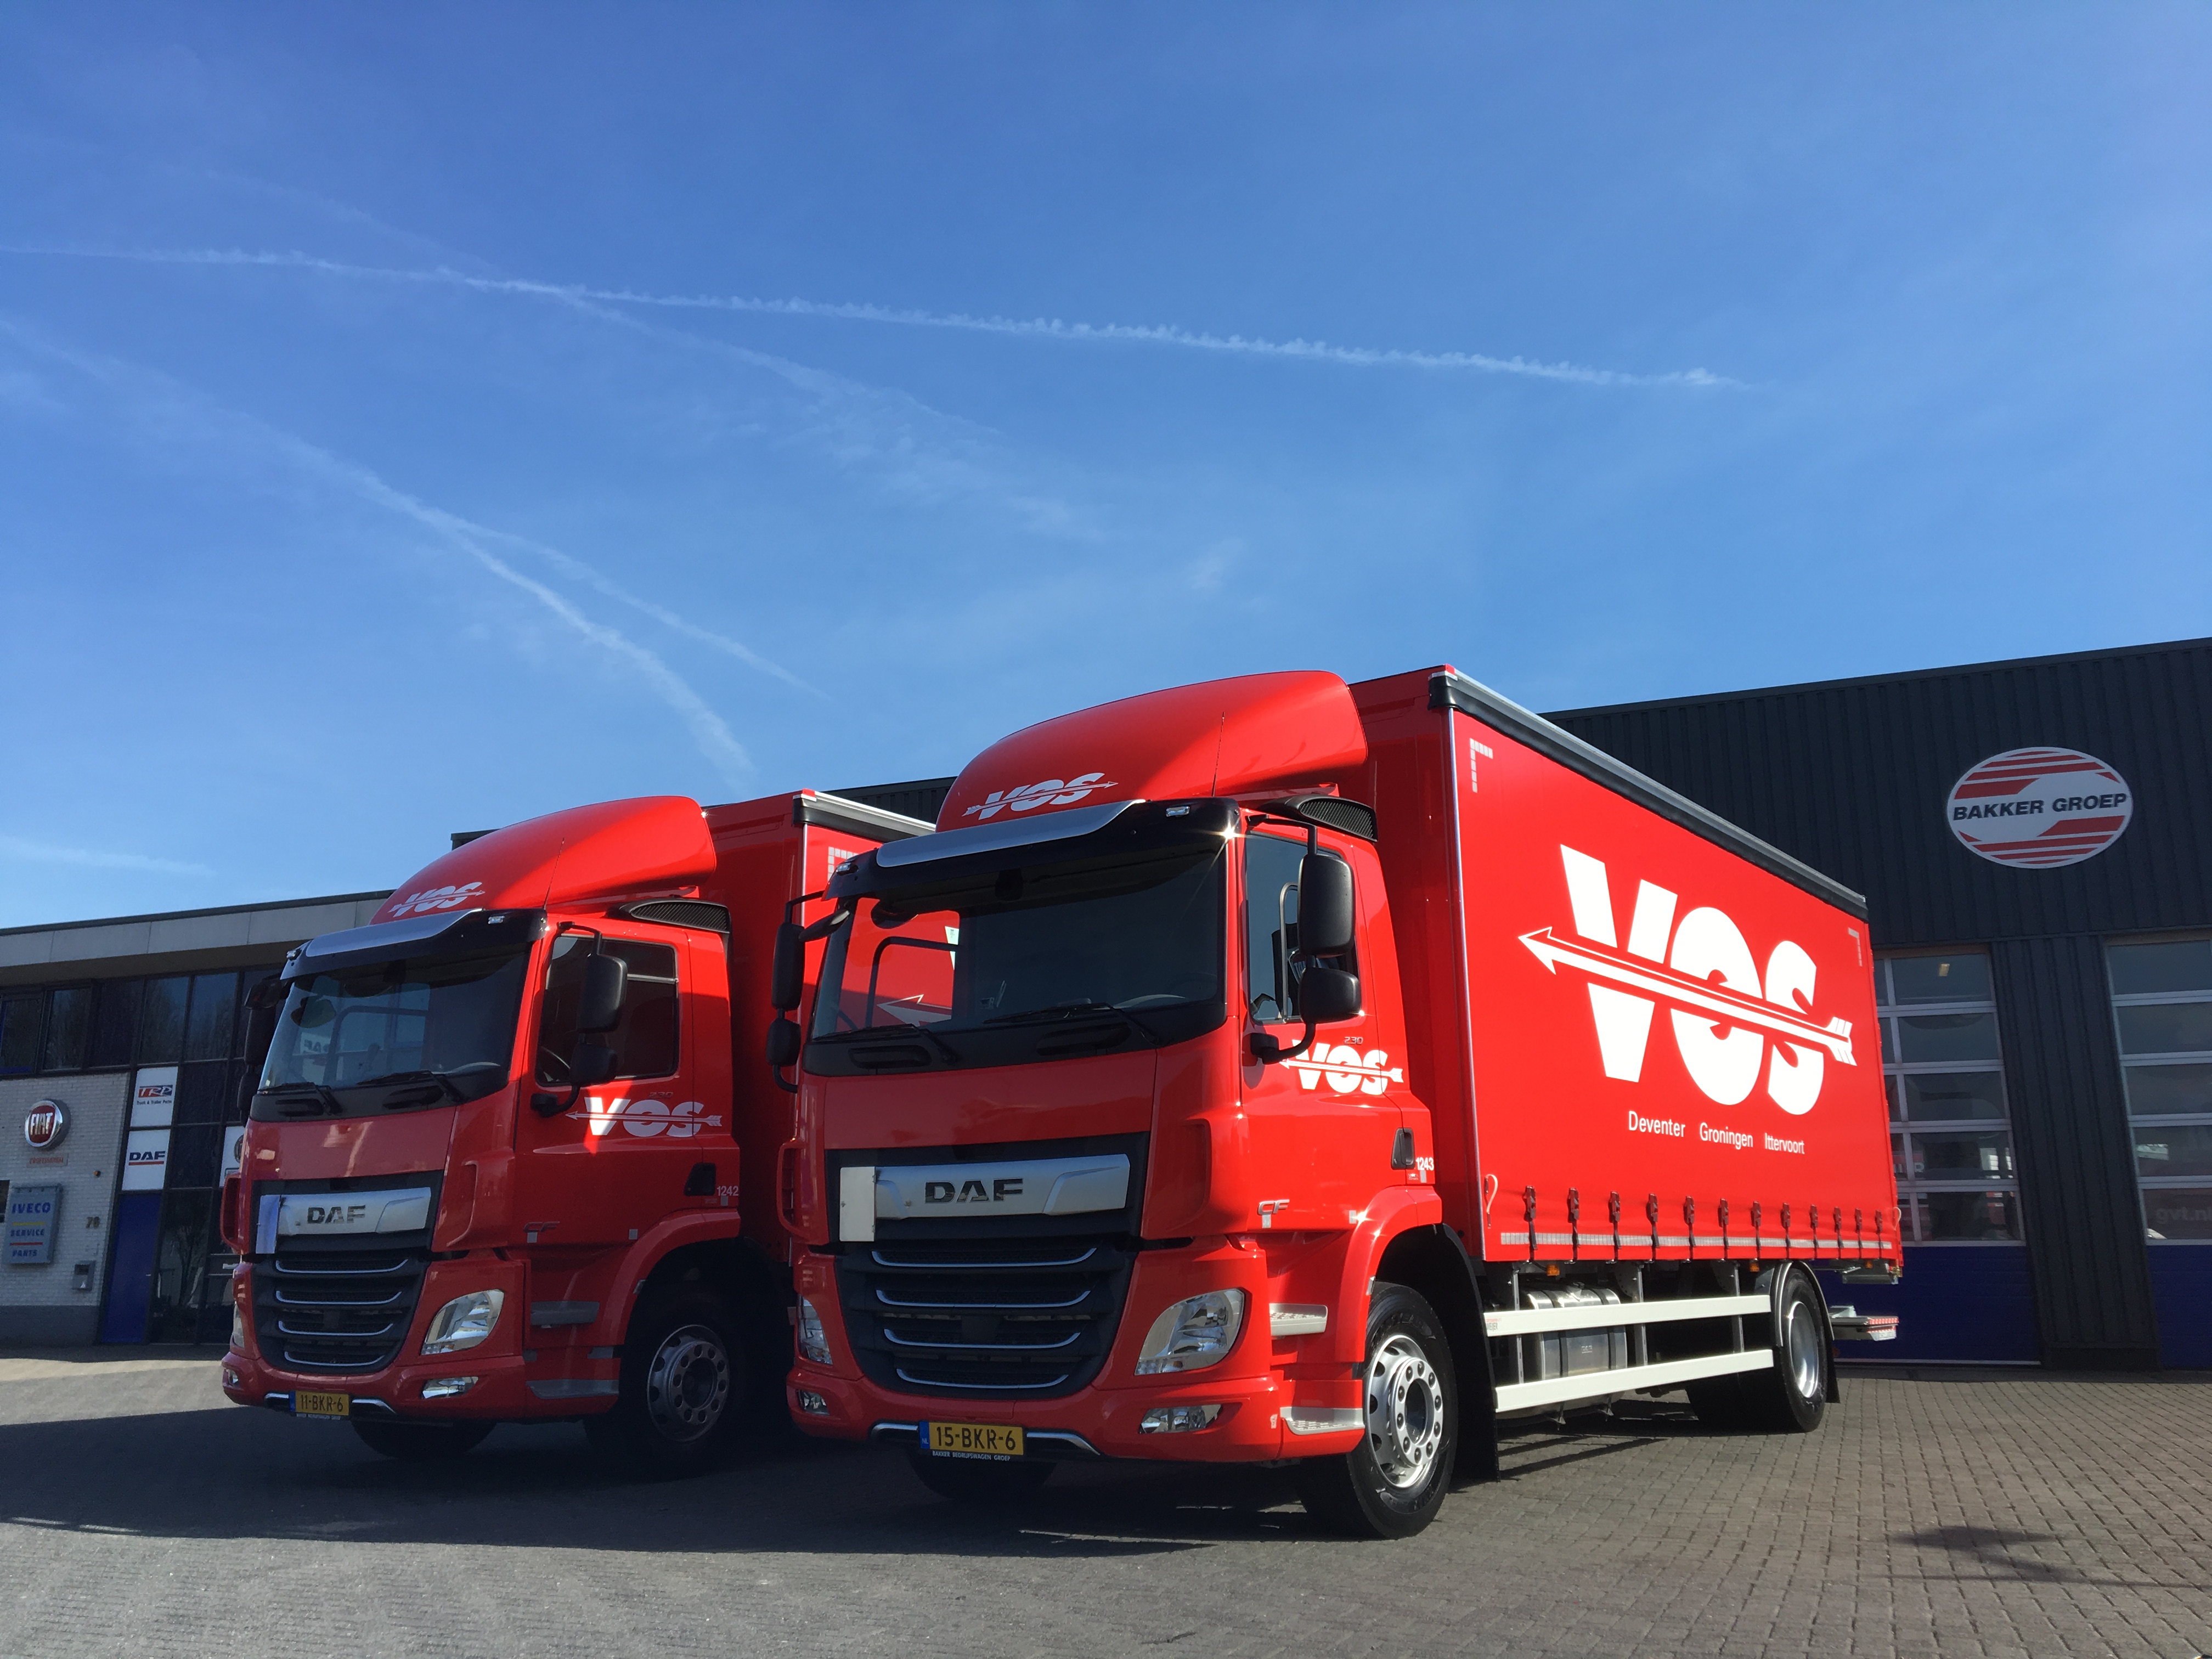 Vos gaat rijden met ‘International Truck of the Year’ (7% CO2 reductie)